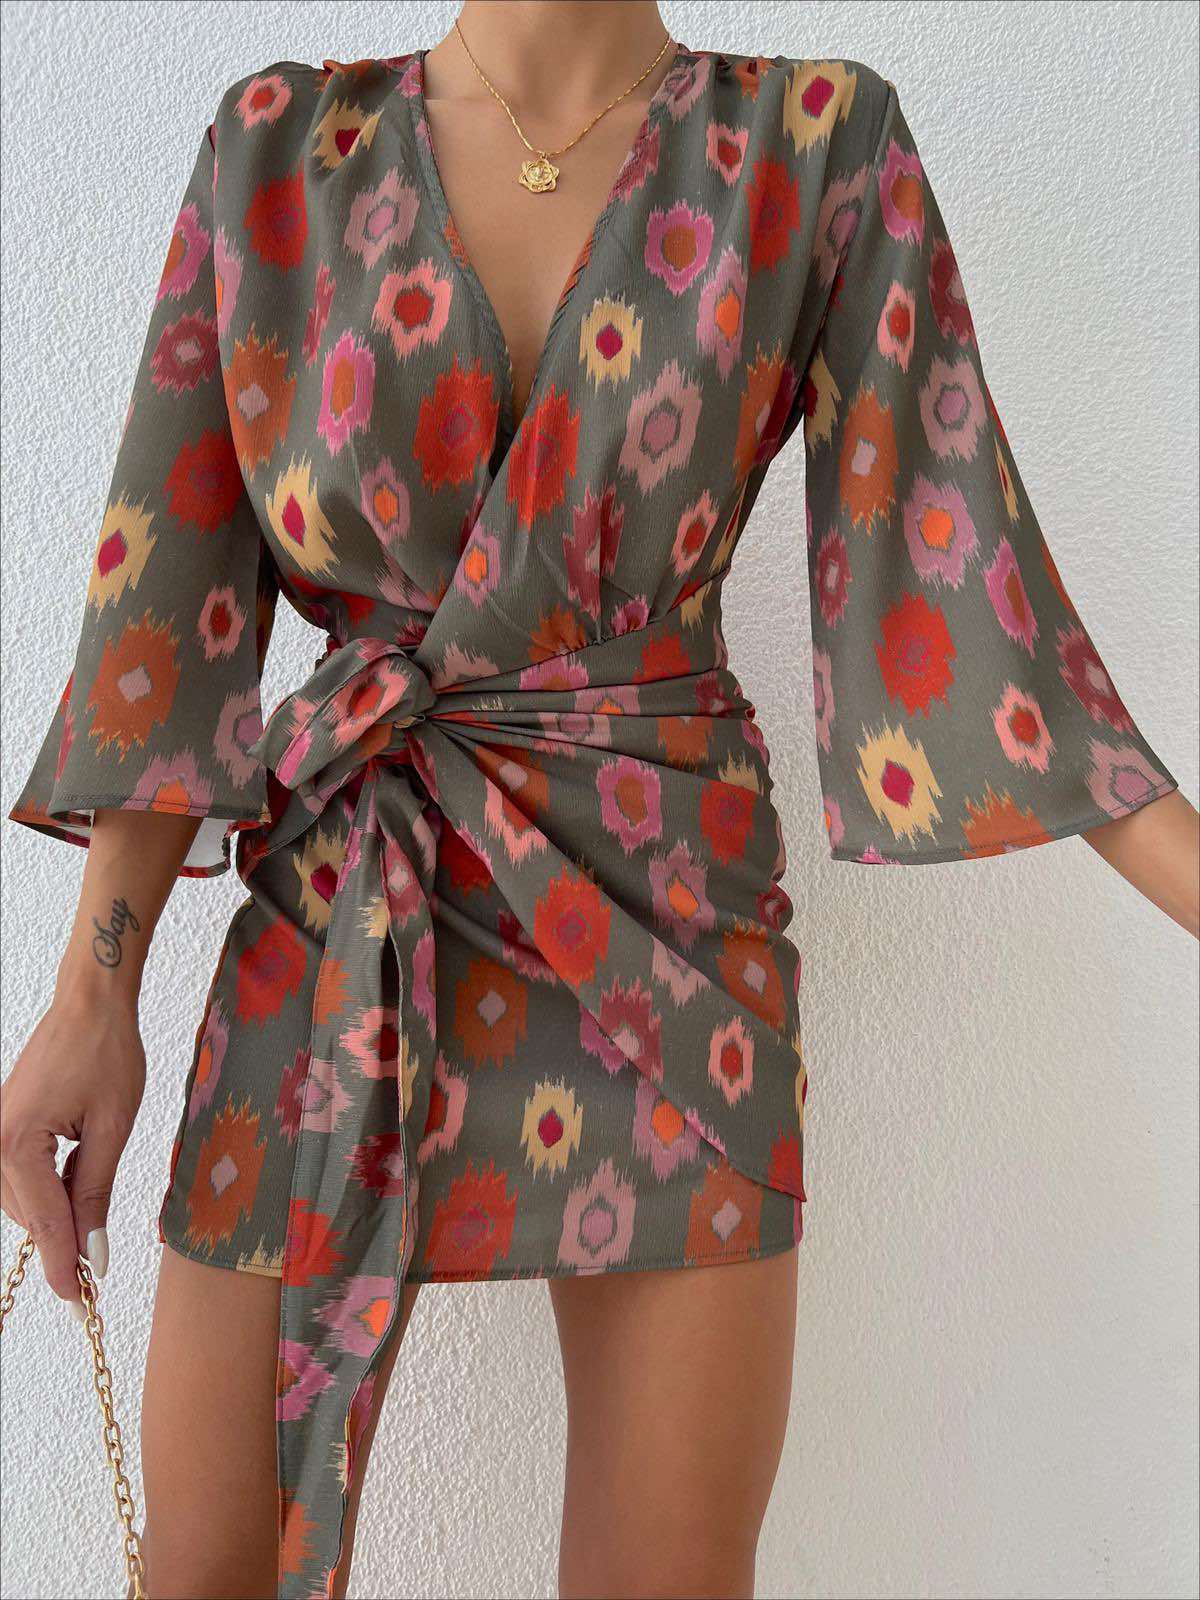 Дамска рокля CARI  https://bvseductive.com/products/дамска-рокля-cari  кокетна къса рокля в цветен десен модел с прехлупване и завръзване отпед за акцент идеален избор за Вашата женствена визия